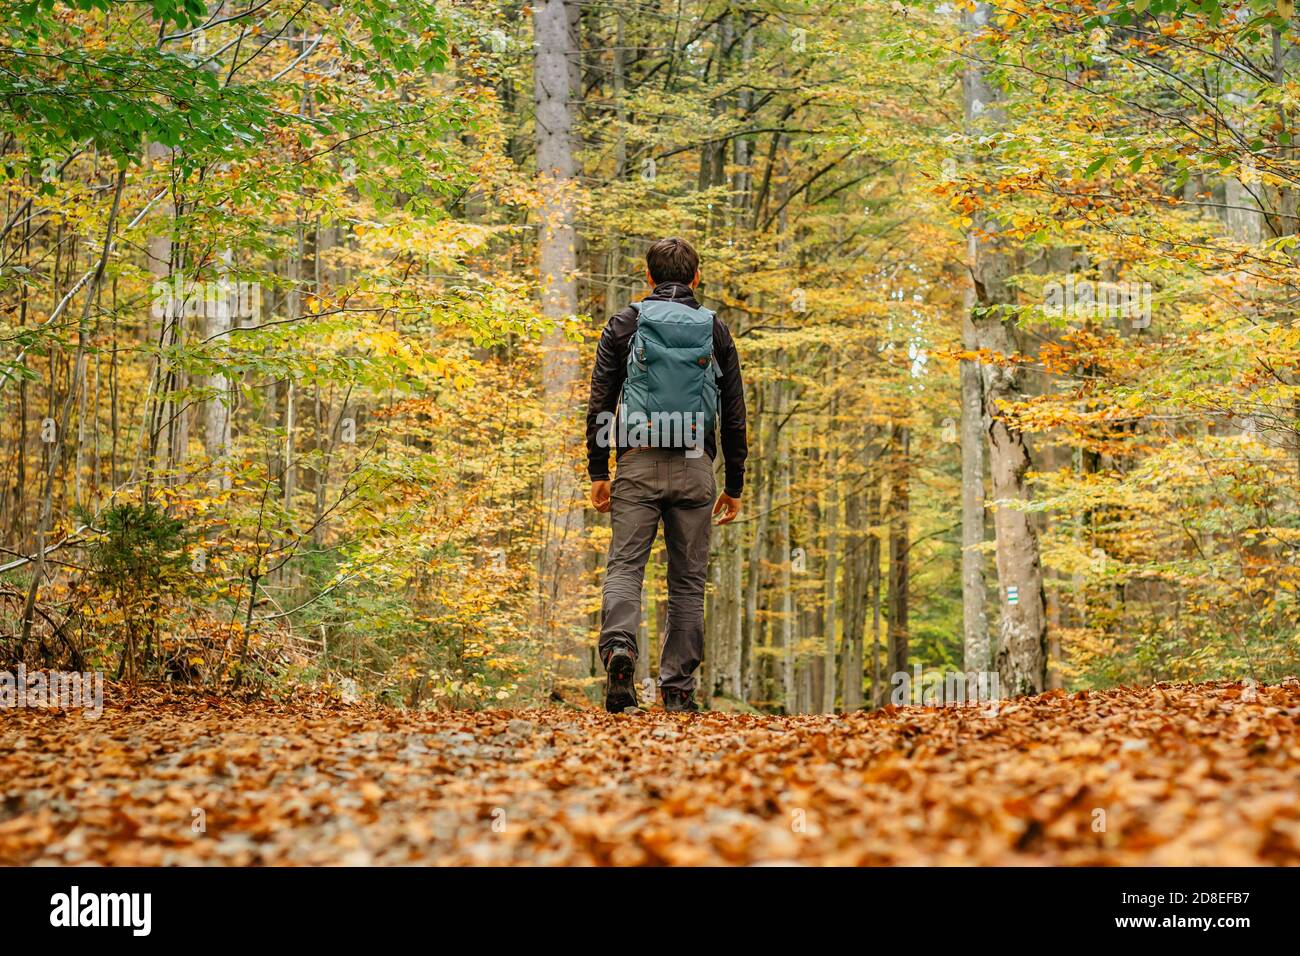 Uomo solitario che cammina in una foresta path.Autumn season.solo sport all'aperto. Distanza sociale. Escursionismo attivo zaino in spalla nella natura colorata. Calda giornata di sole in Foto Stock